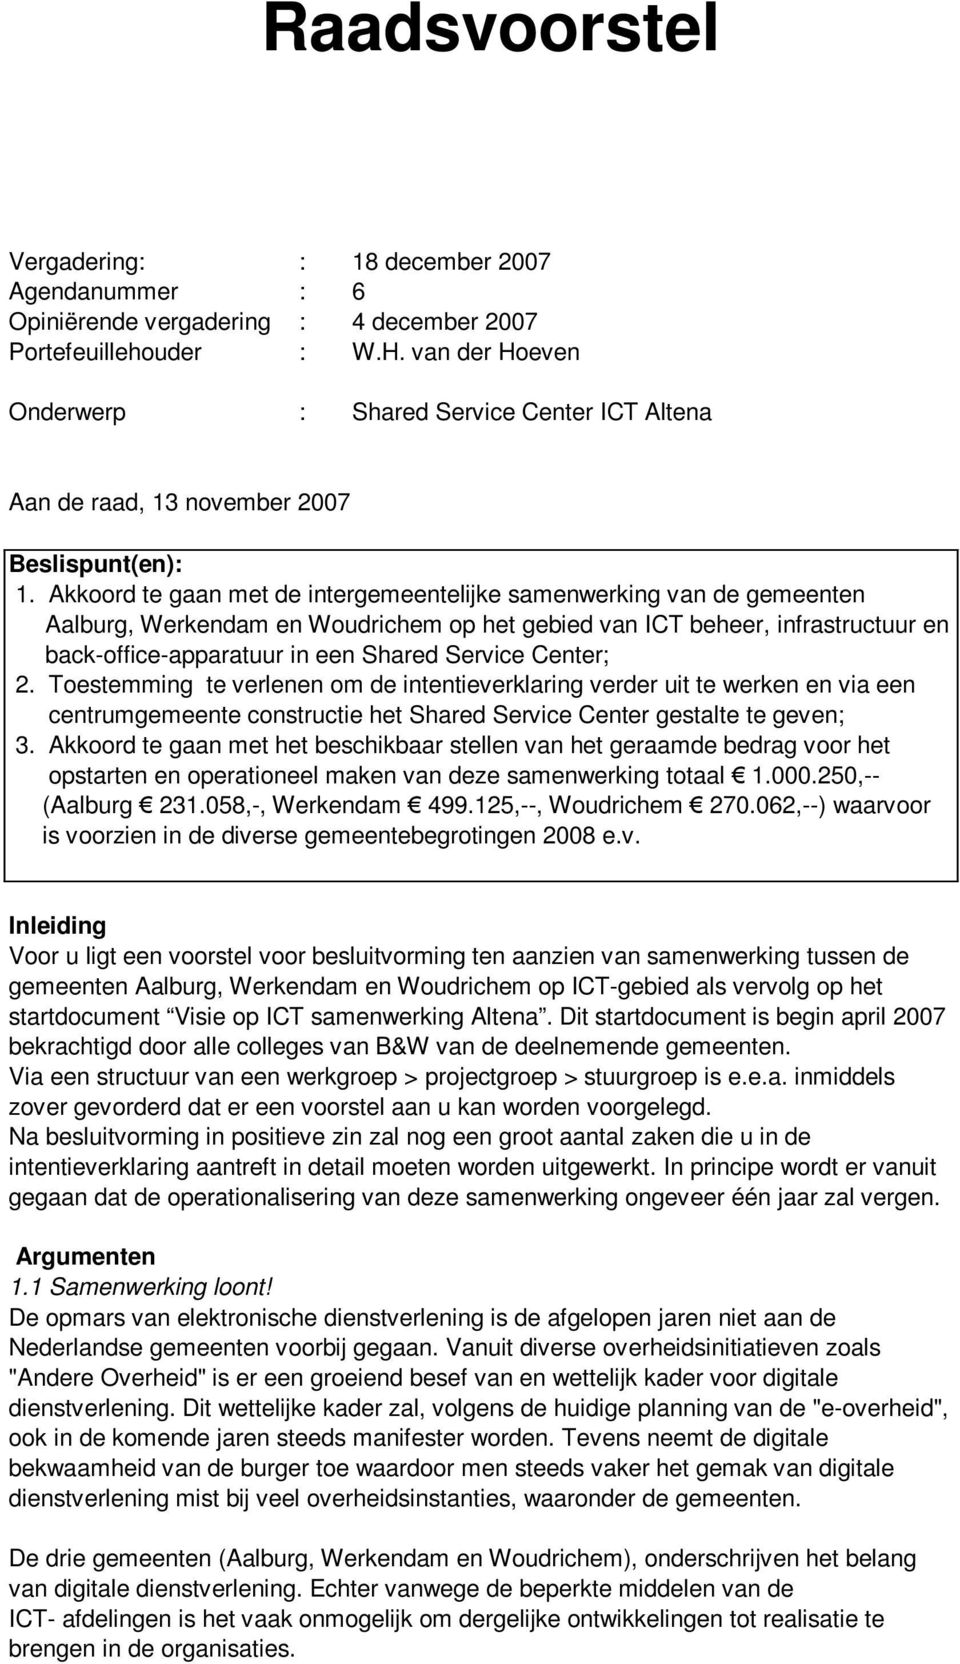 Akkoord te gaan met de intergemeentelijke samenwerking van de gemeenten Aalburg, Werkendam en Woudrichem op het gebied van ICT beheer, infrastructuur en back-office-apparatuur in een Shared Service